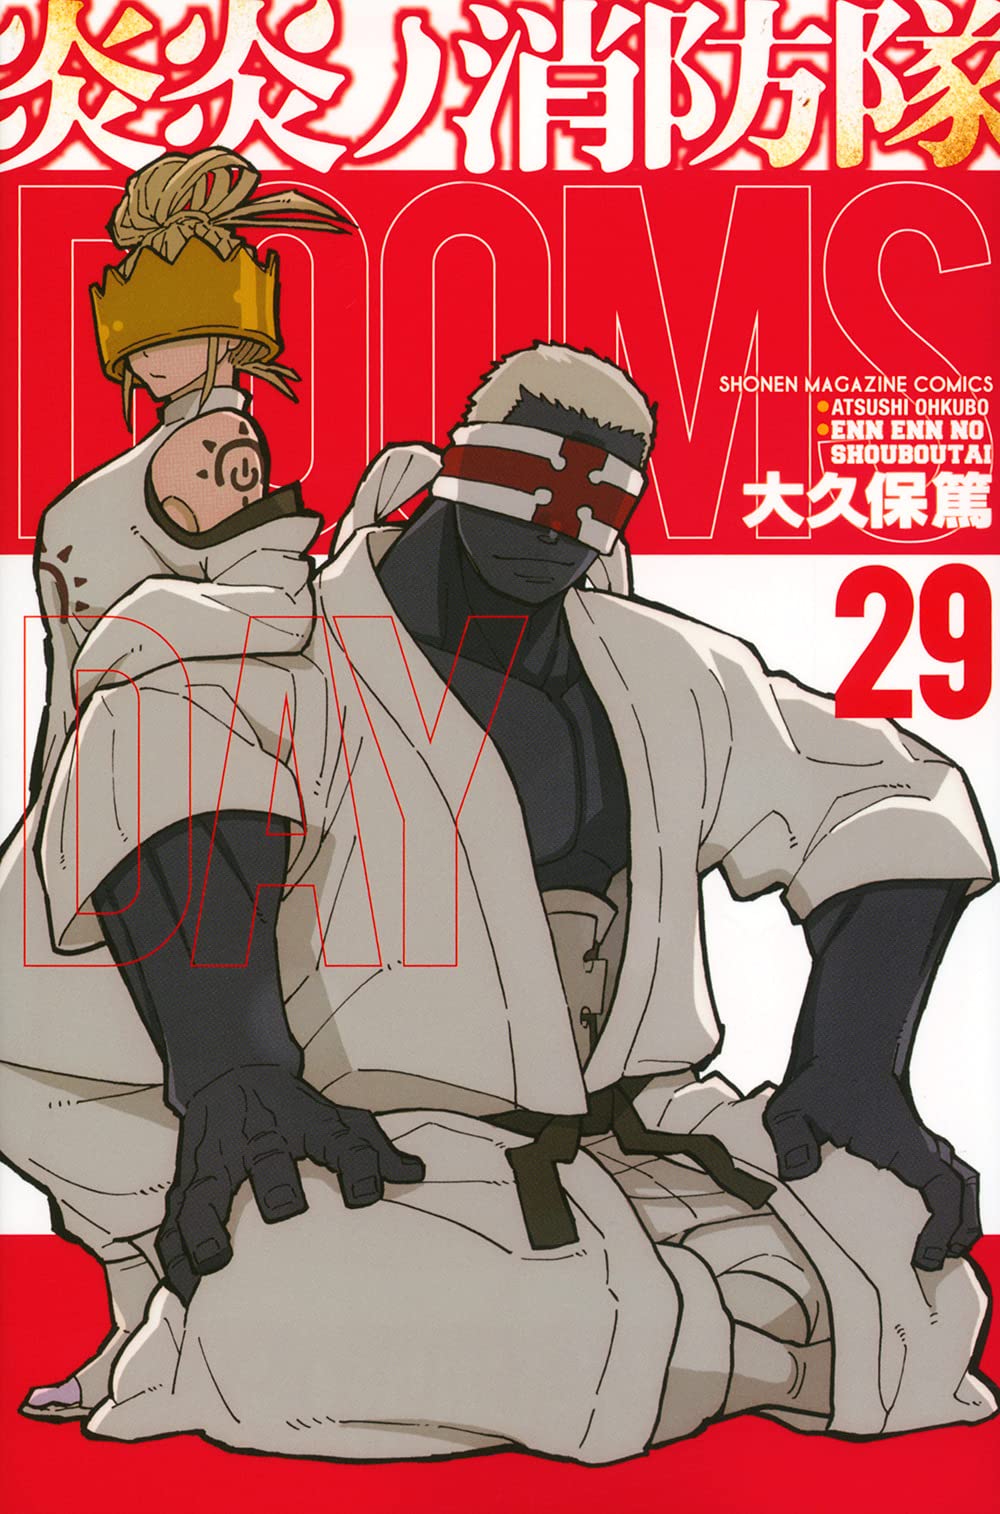 Fire Force Volume 2 (Enen no Shouboutai) - Manga Store 